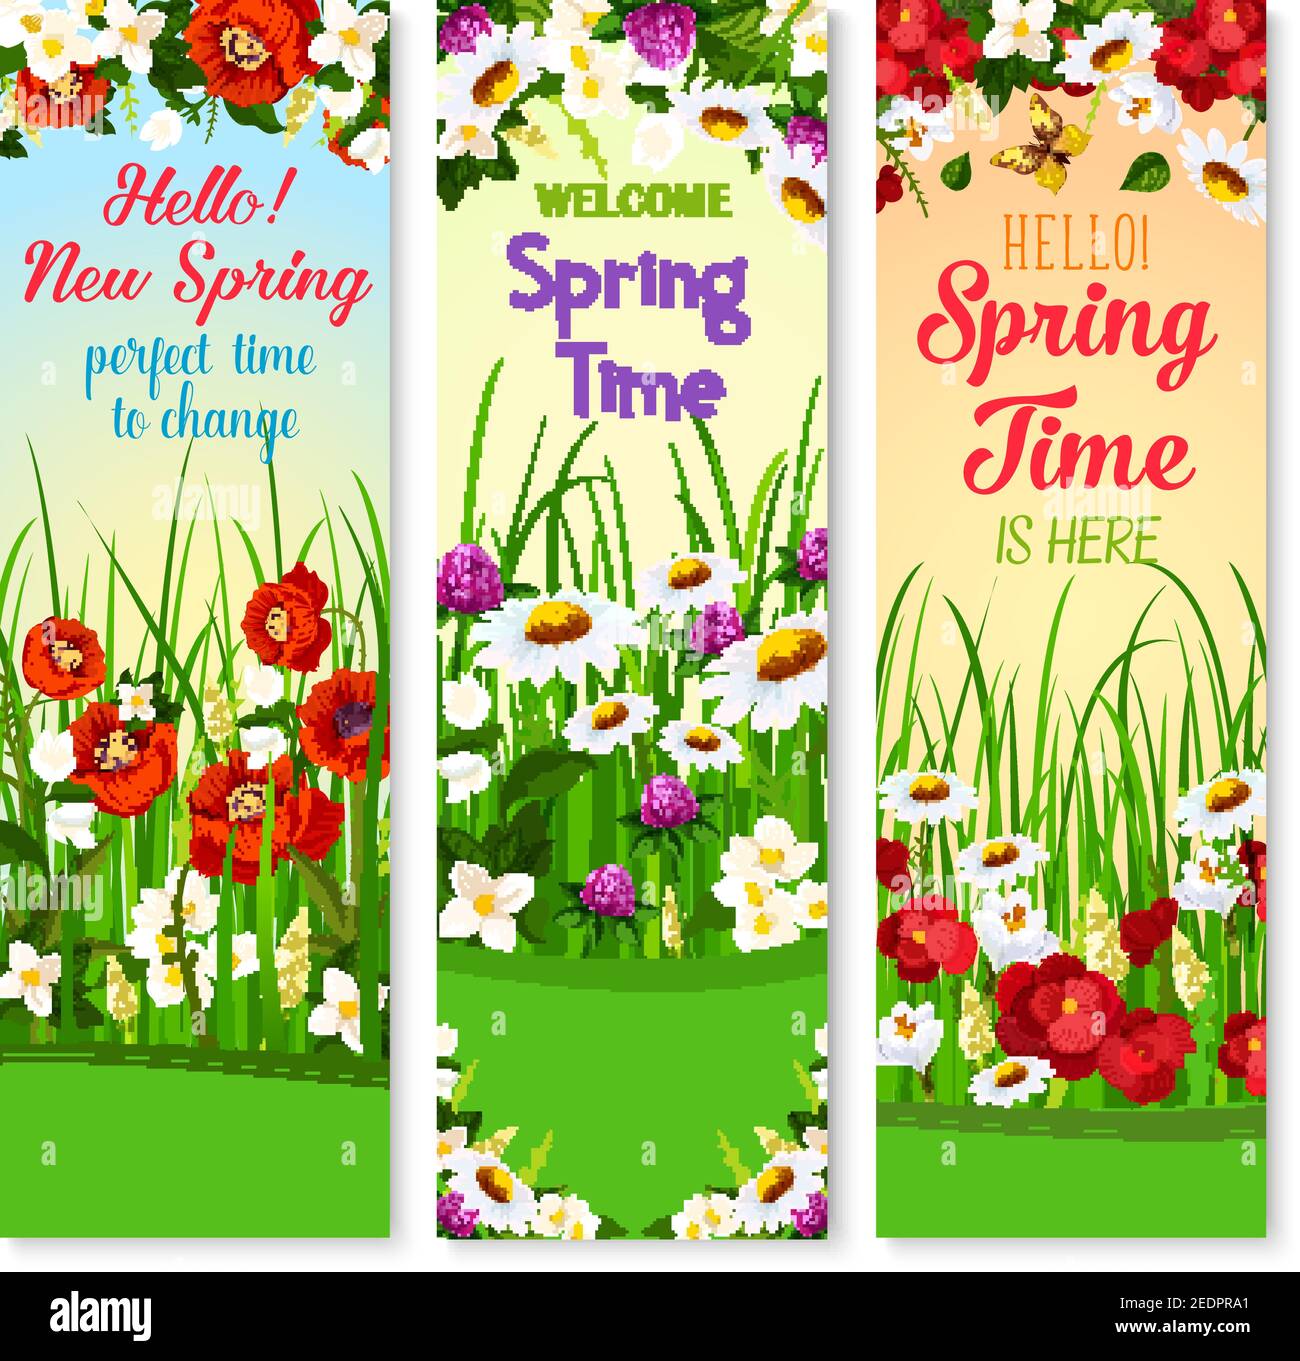 Banner vettoriali di auguri primaverili impostati con Hello Spring Wishes. Il disegno di festa dei fiori di papavero e di begonia in fiore, daisy o di daffodil e Illustrazione Vettoriale